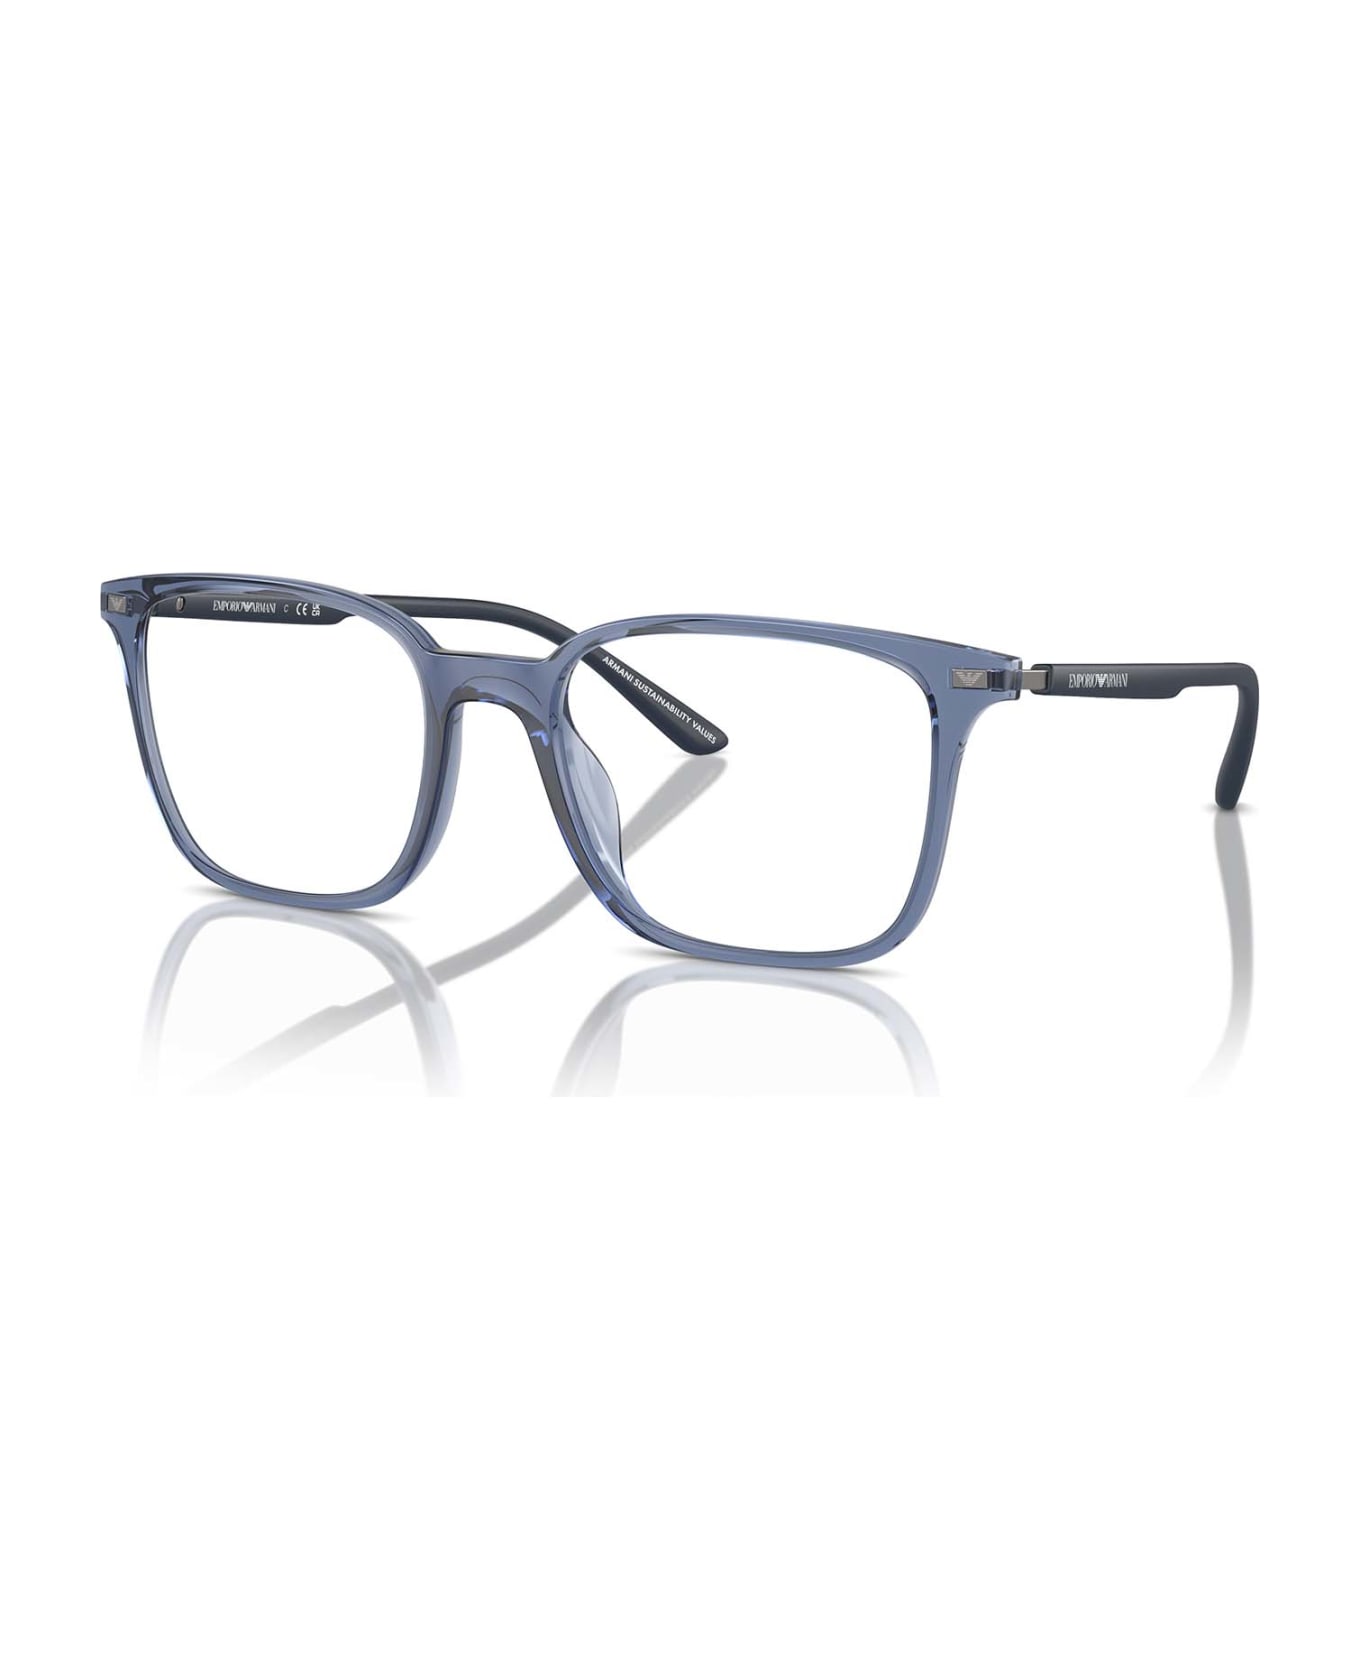 Emporio Armani Ea3242u Shiny Transparent Blue Glasses - Shiny Transparent Blue